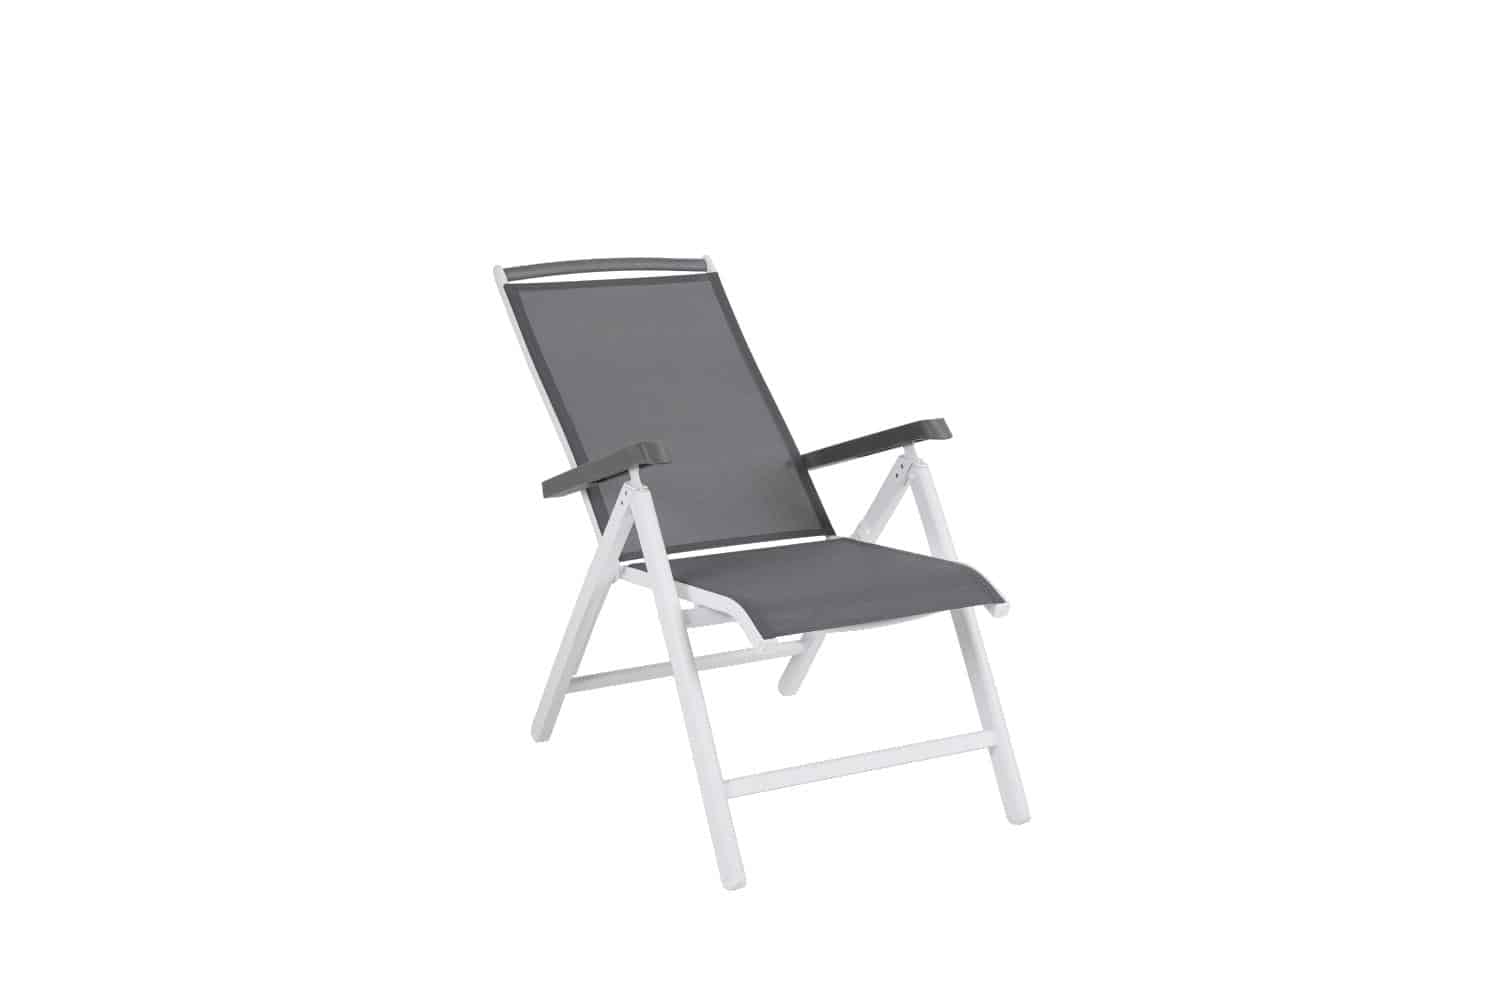 Brafab Andy Positionsstol med stomme av vit aluminium, grå textilene och detaljer i grå nonwood.